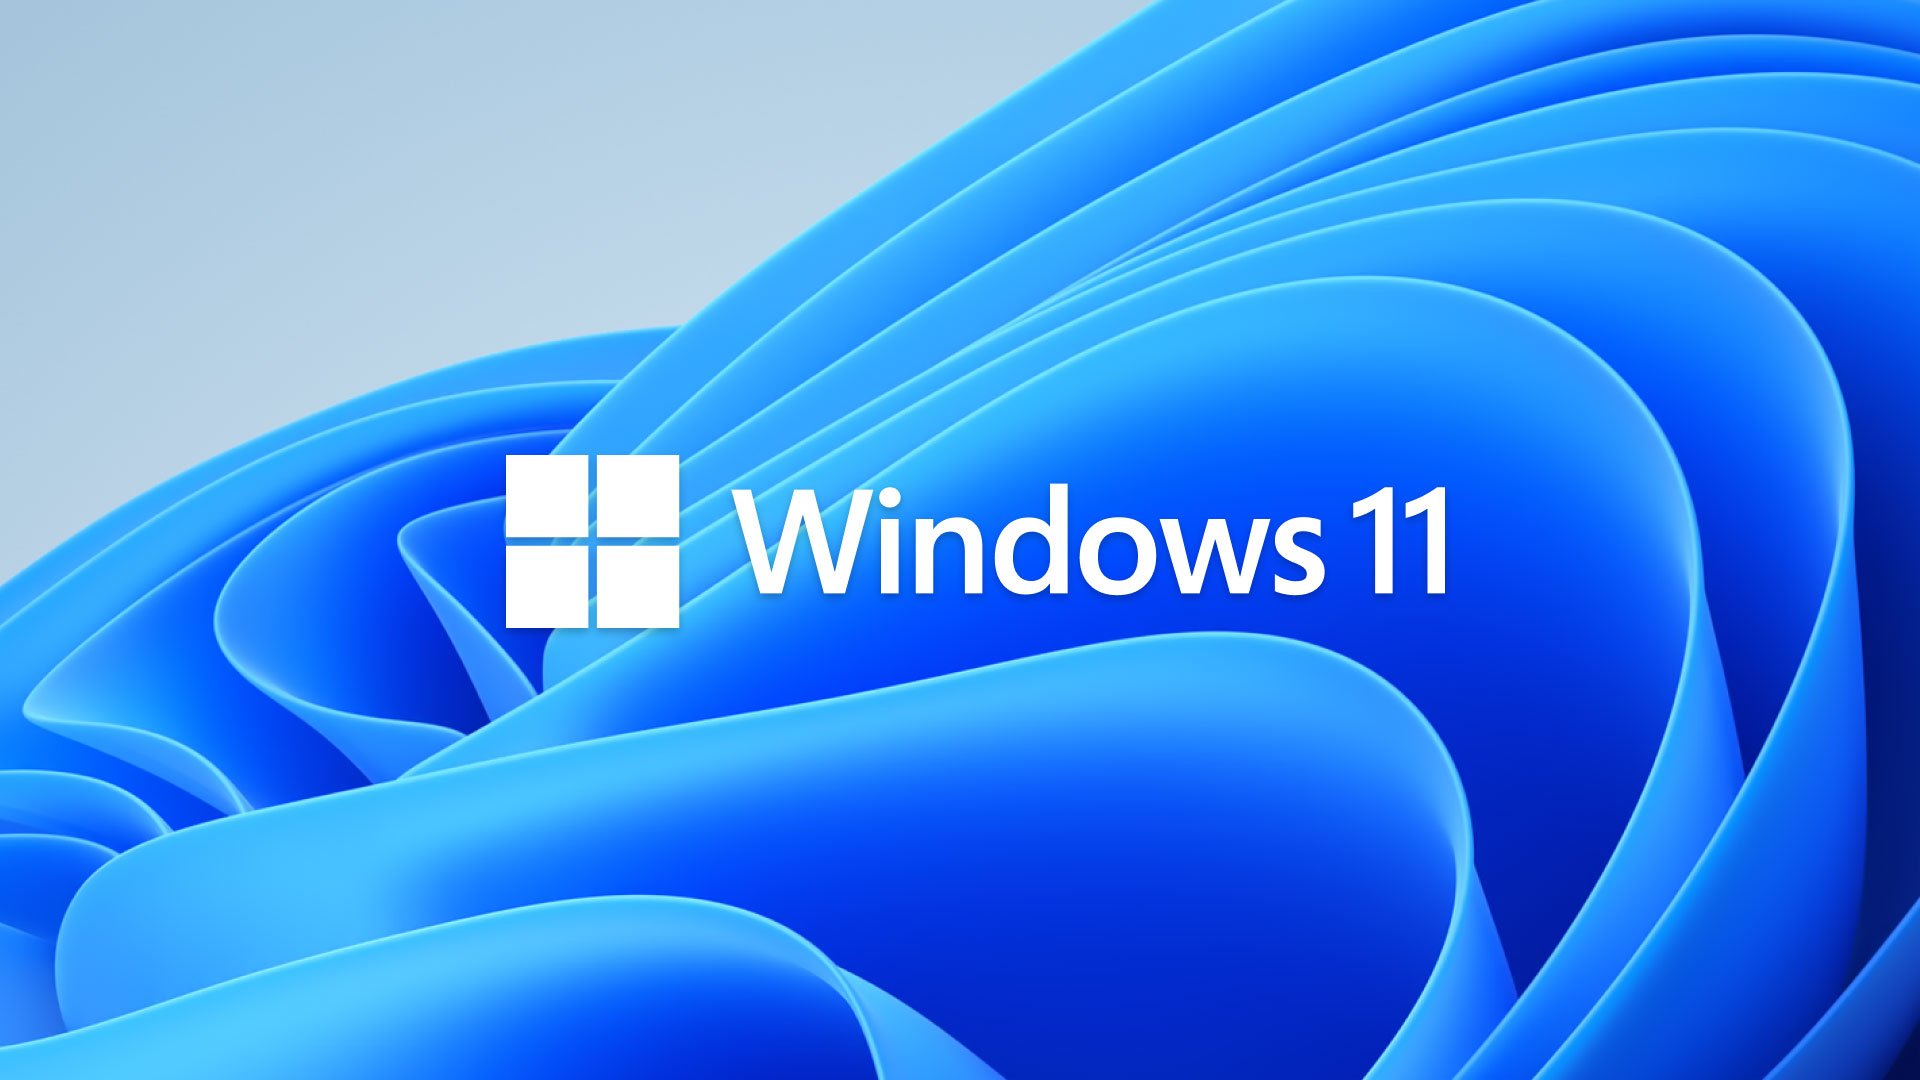 Windows 11 by bol nainštalovaný len na 16 % počítačov schopných ho spustiť 1